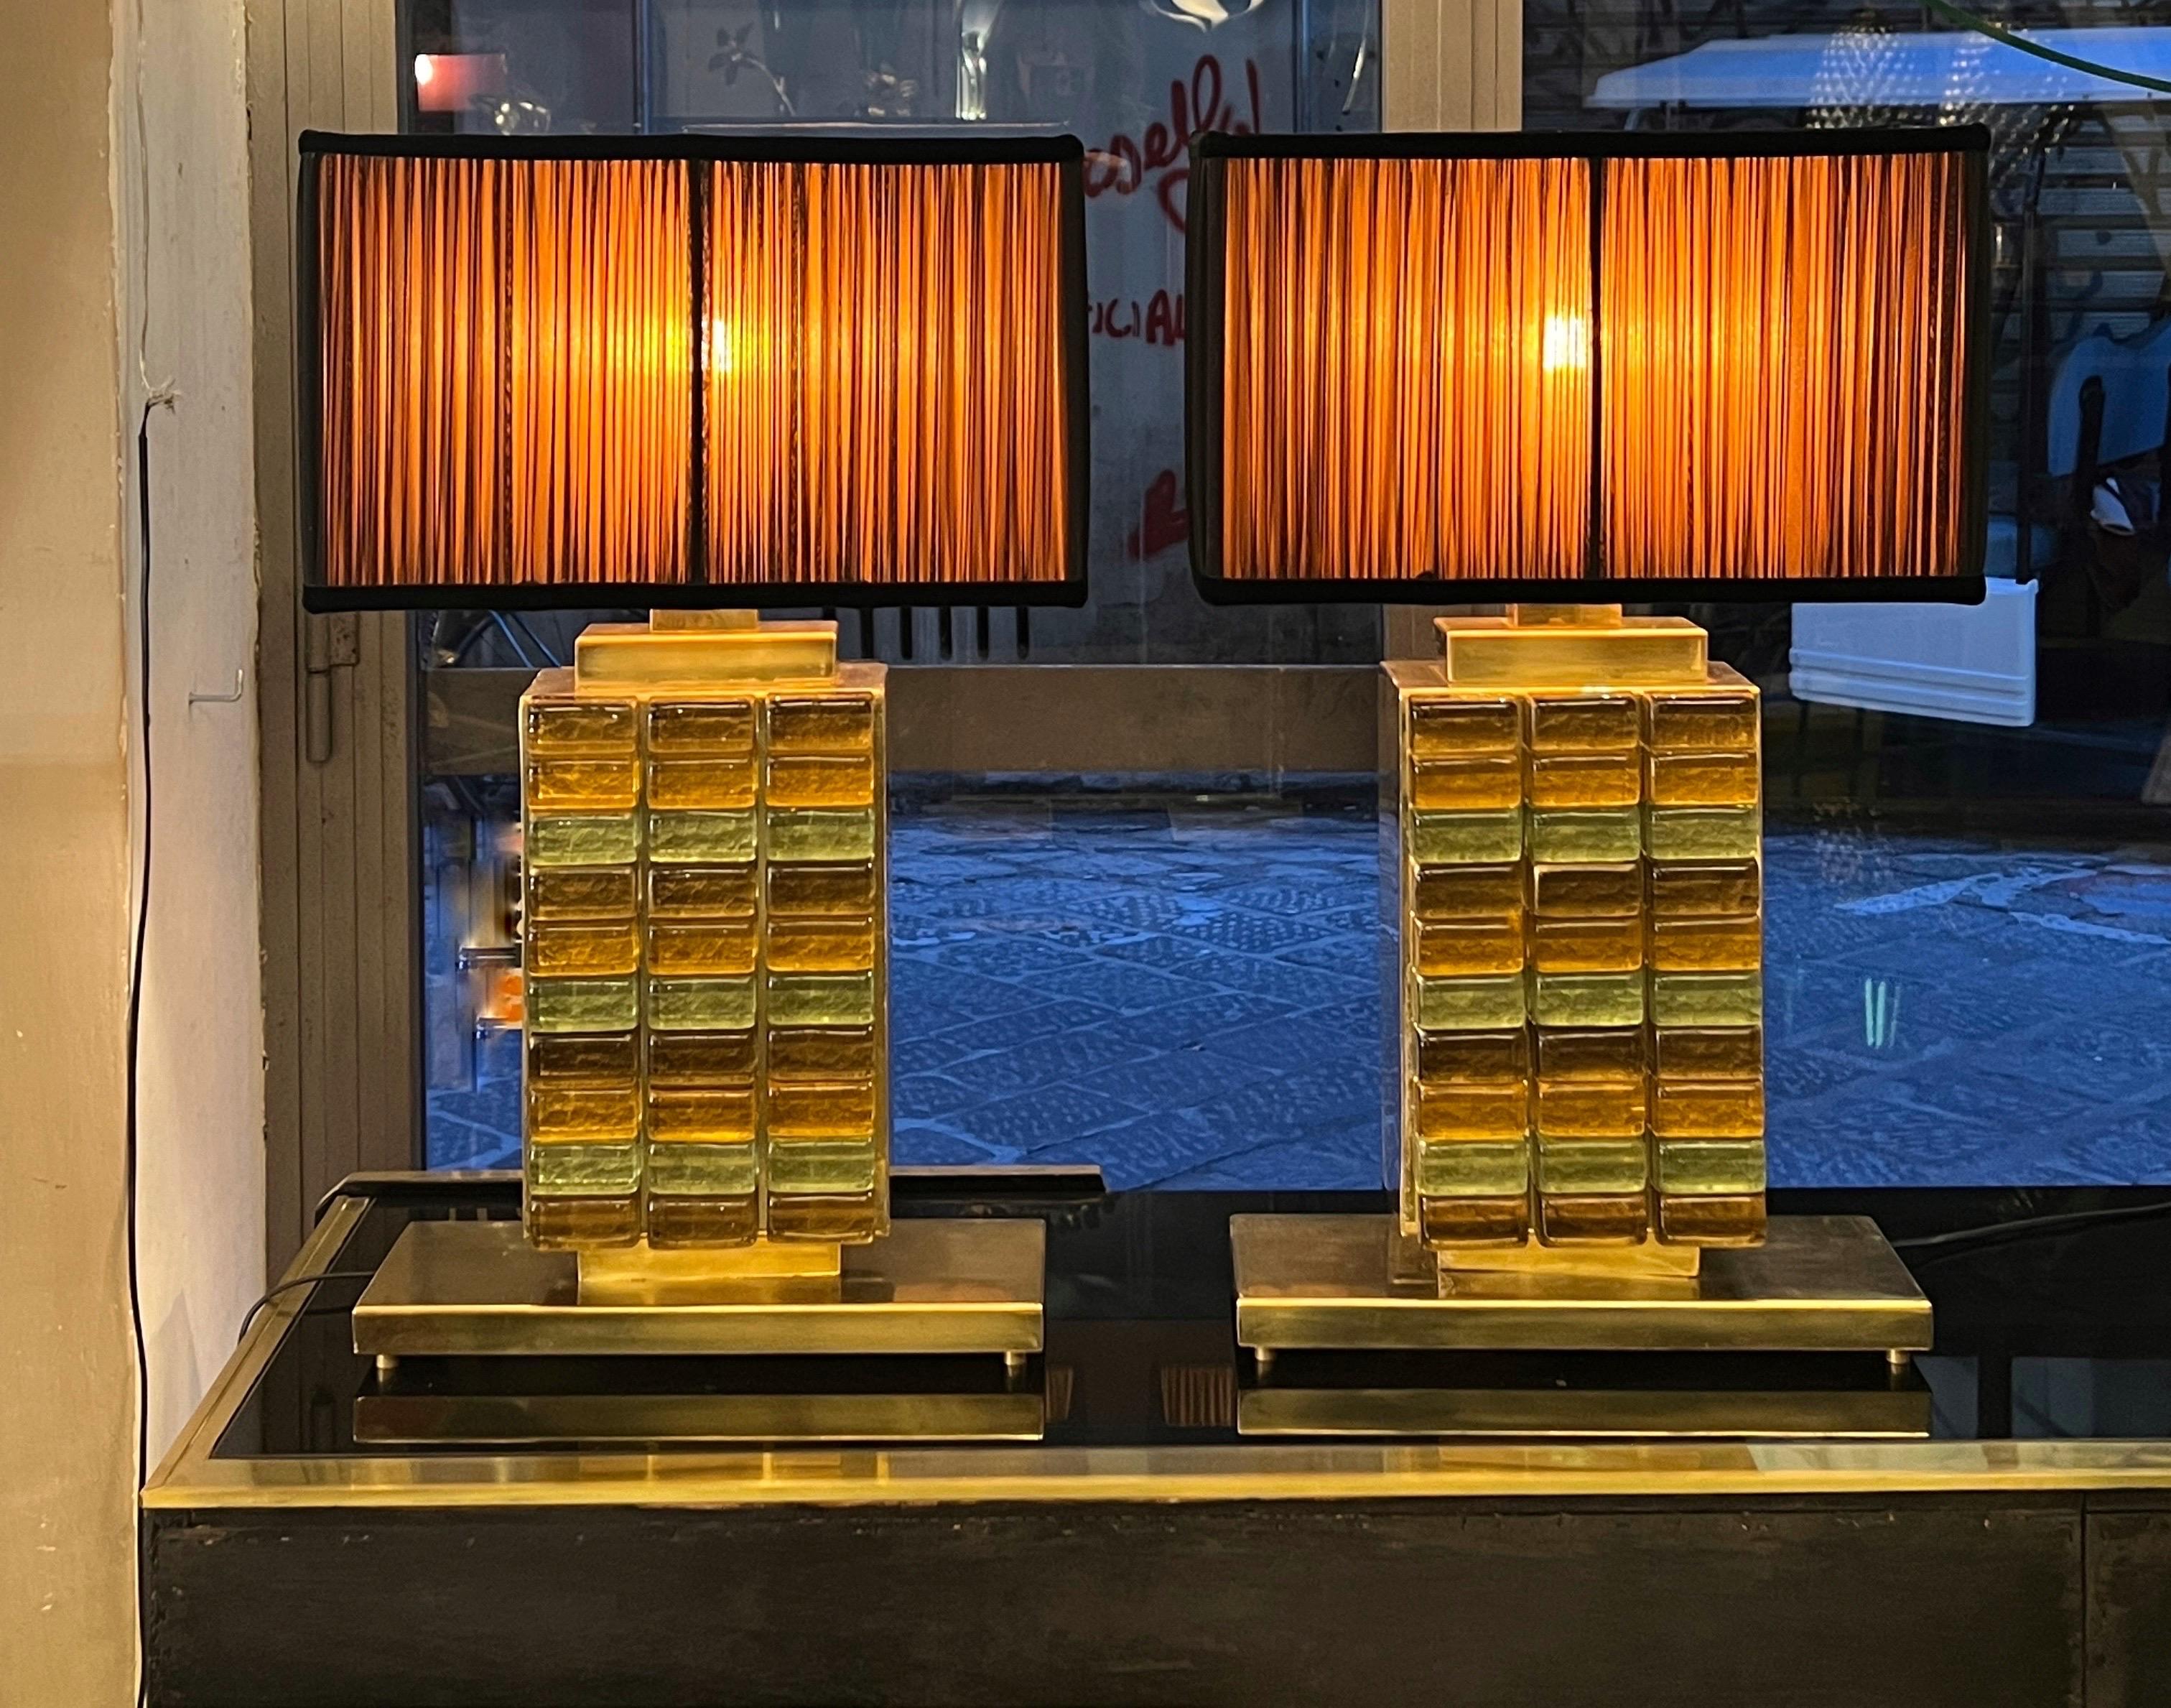 Paire de lampes de table en verre de Murano jaune et vert avec nos abat-jours.
Les bases ont une structure en laiton et les pièces en verre ont un effet mosaïque avec des tons jaunes, verts et bronze.
Les lampes conviennent également pour le centre